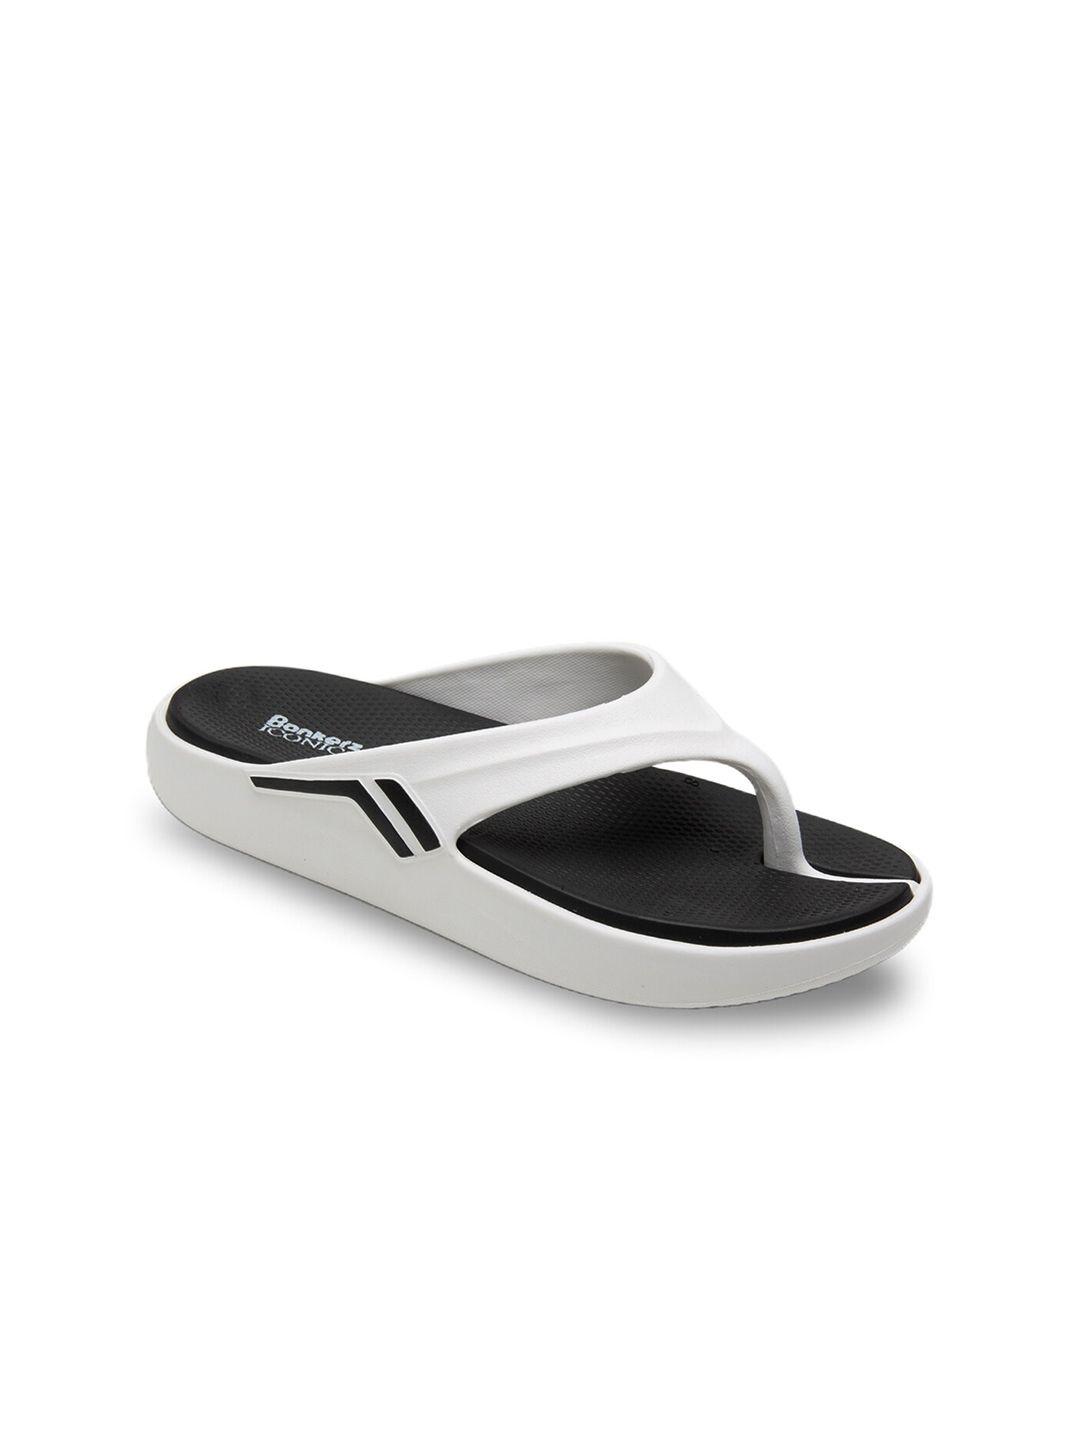 bonkerz-women-white-&-black-croslite-thong-flip-flops